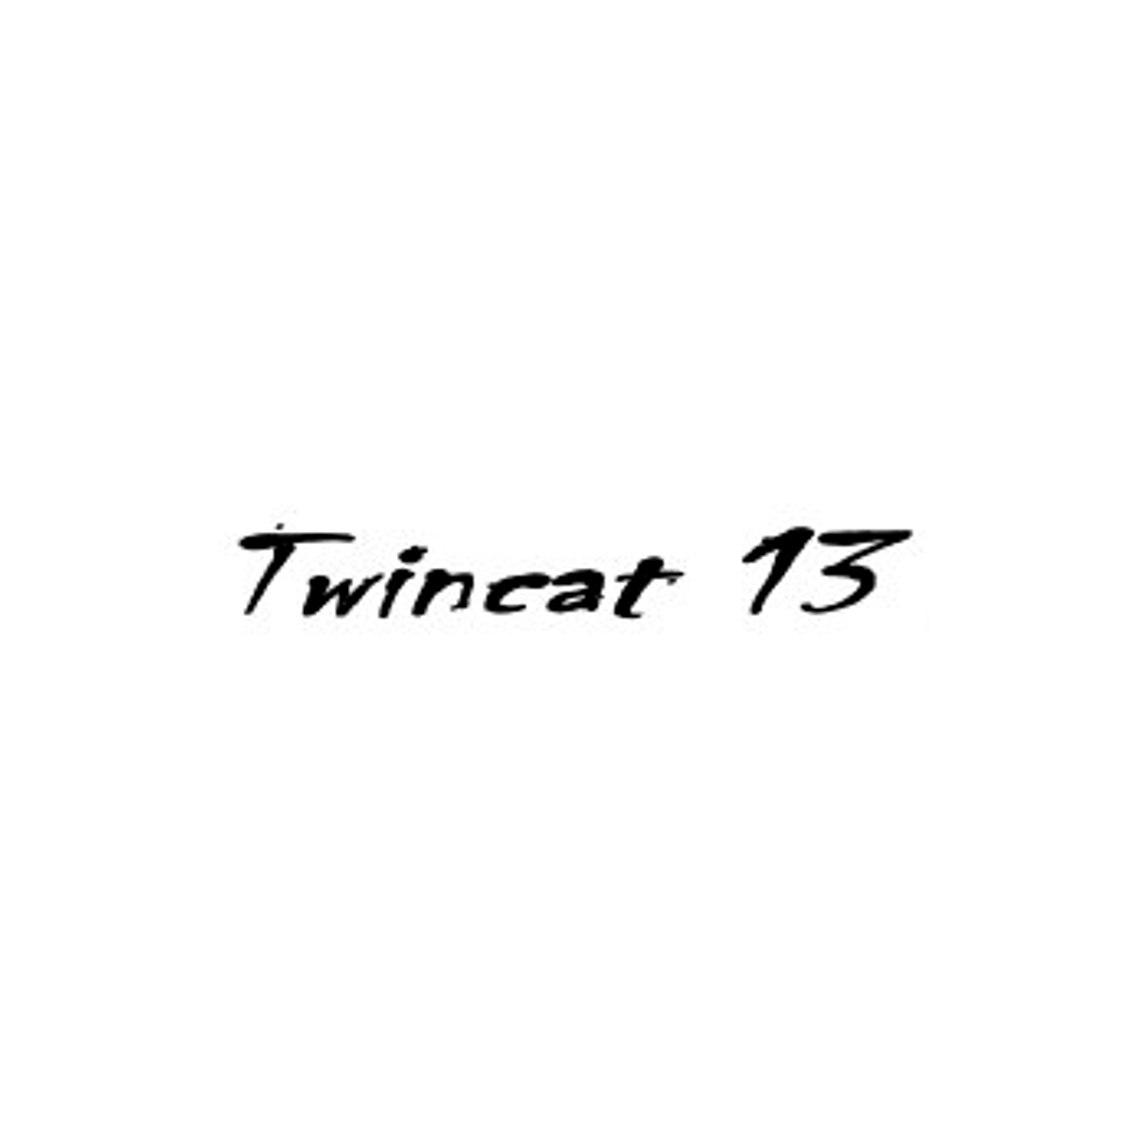 Compatibile Twincat 13